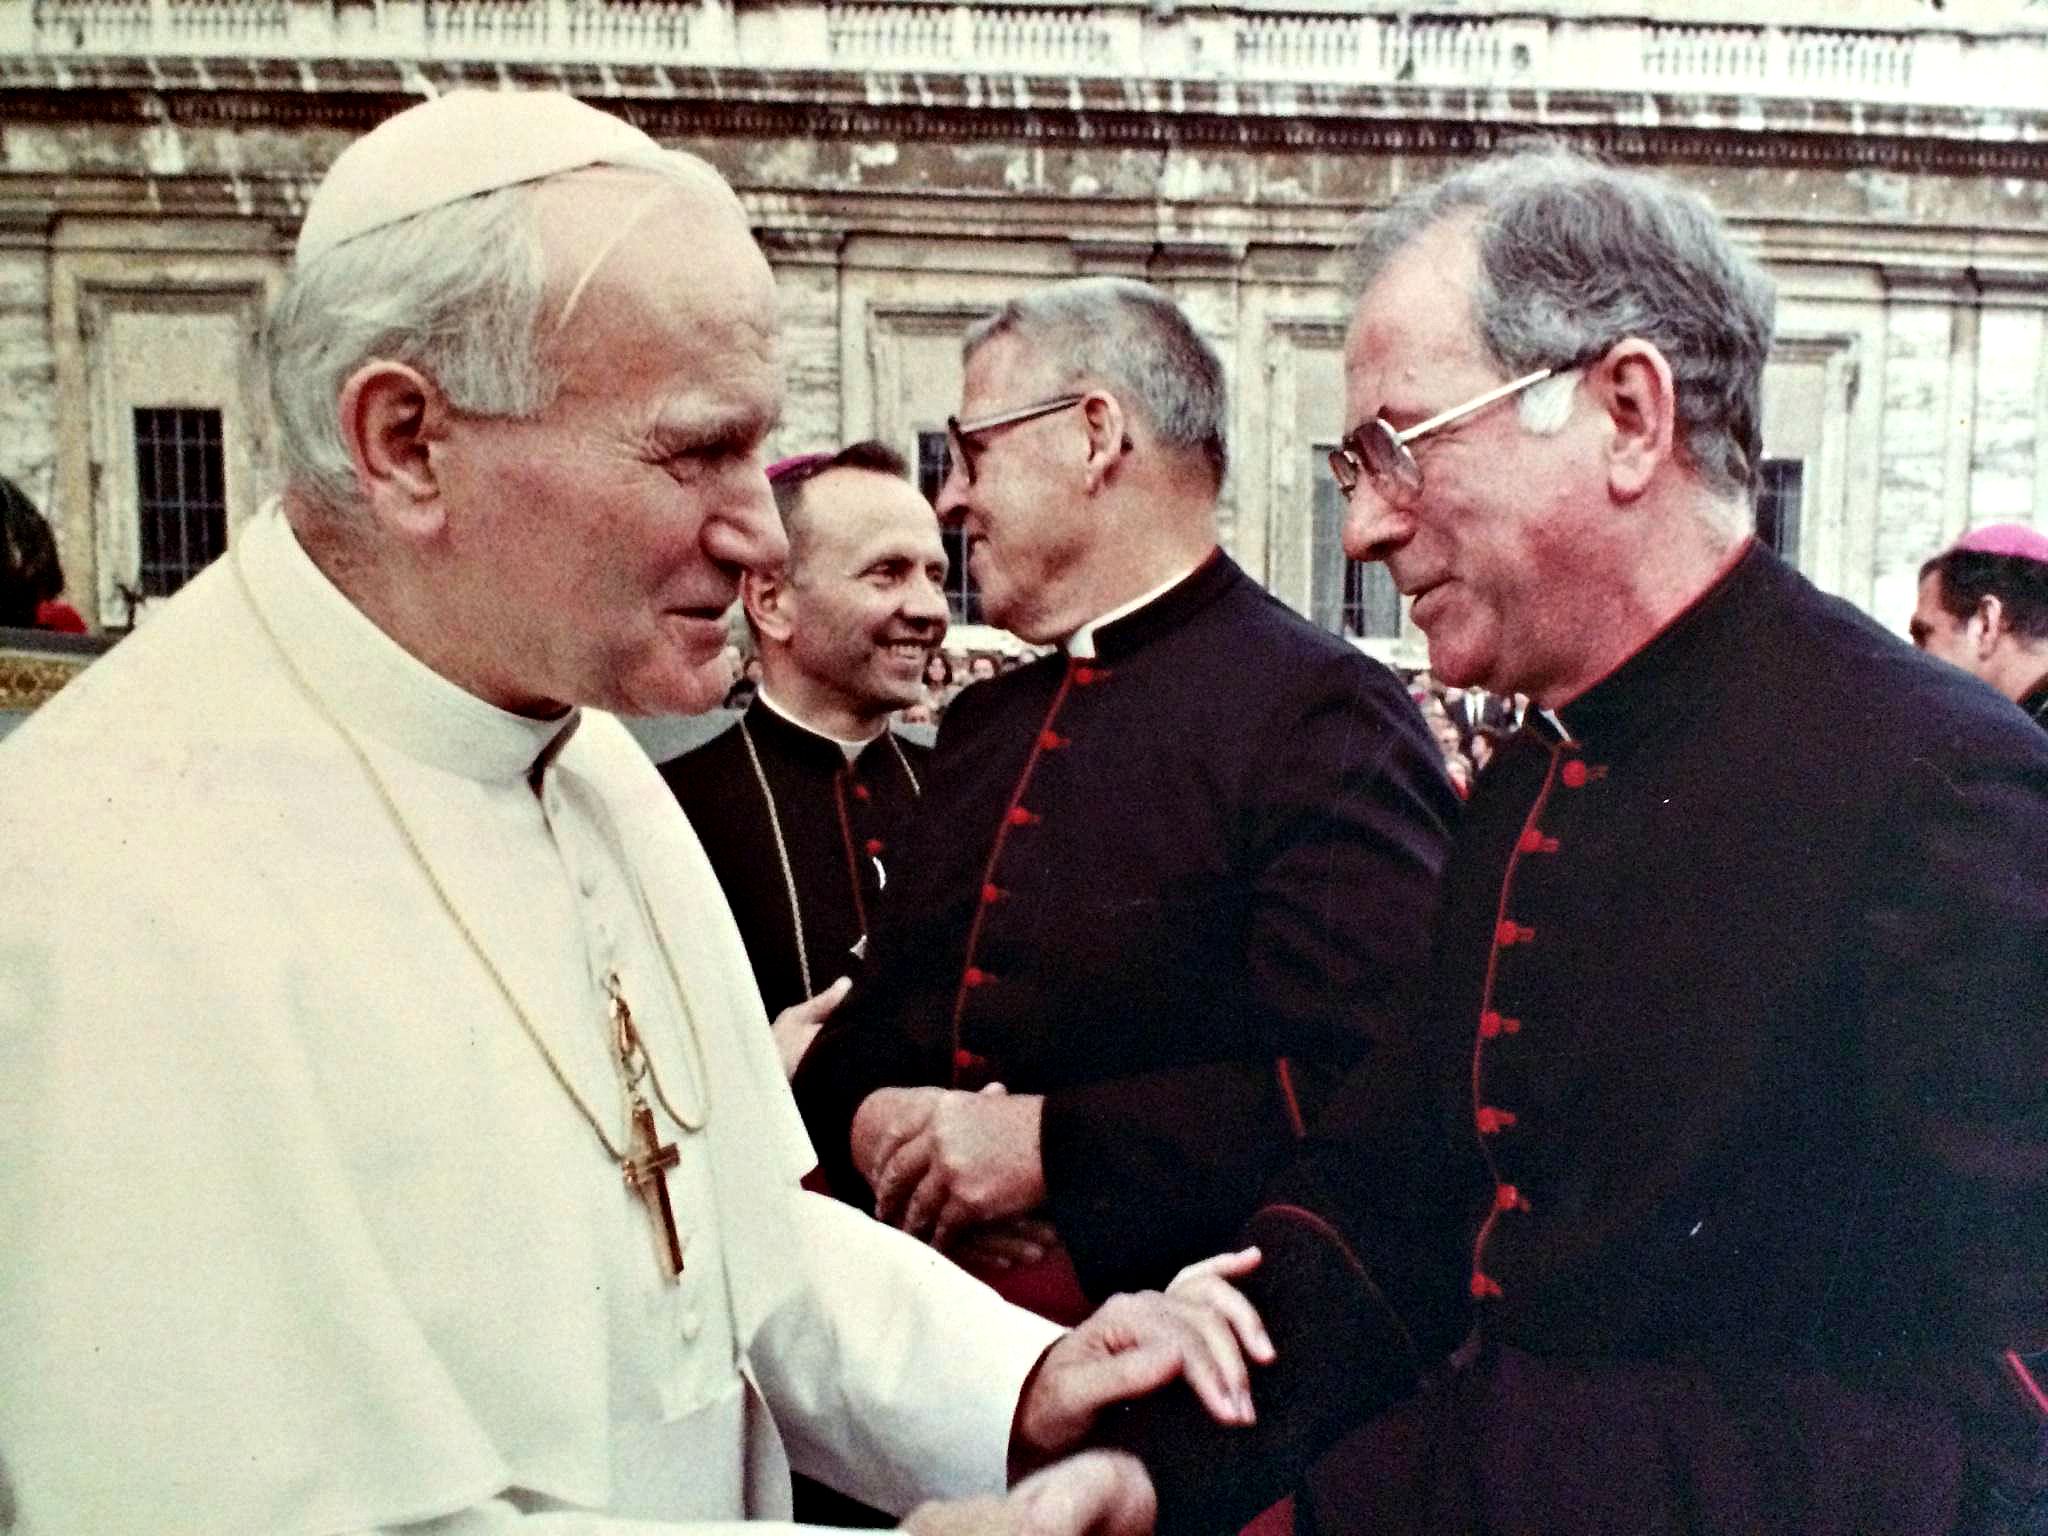 Monsignor&PopeJohnPaul